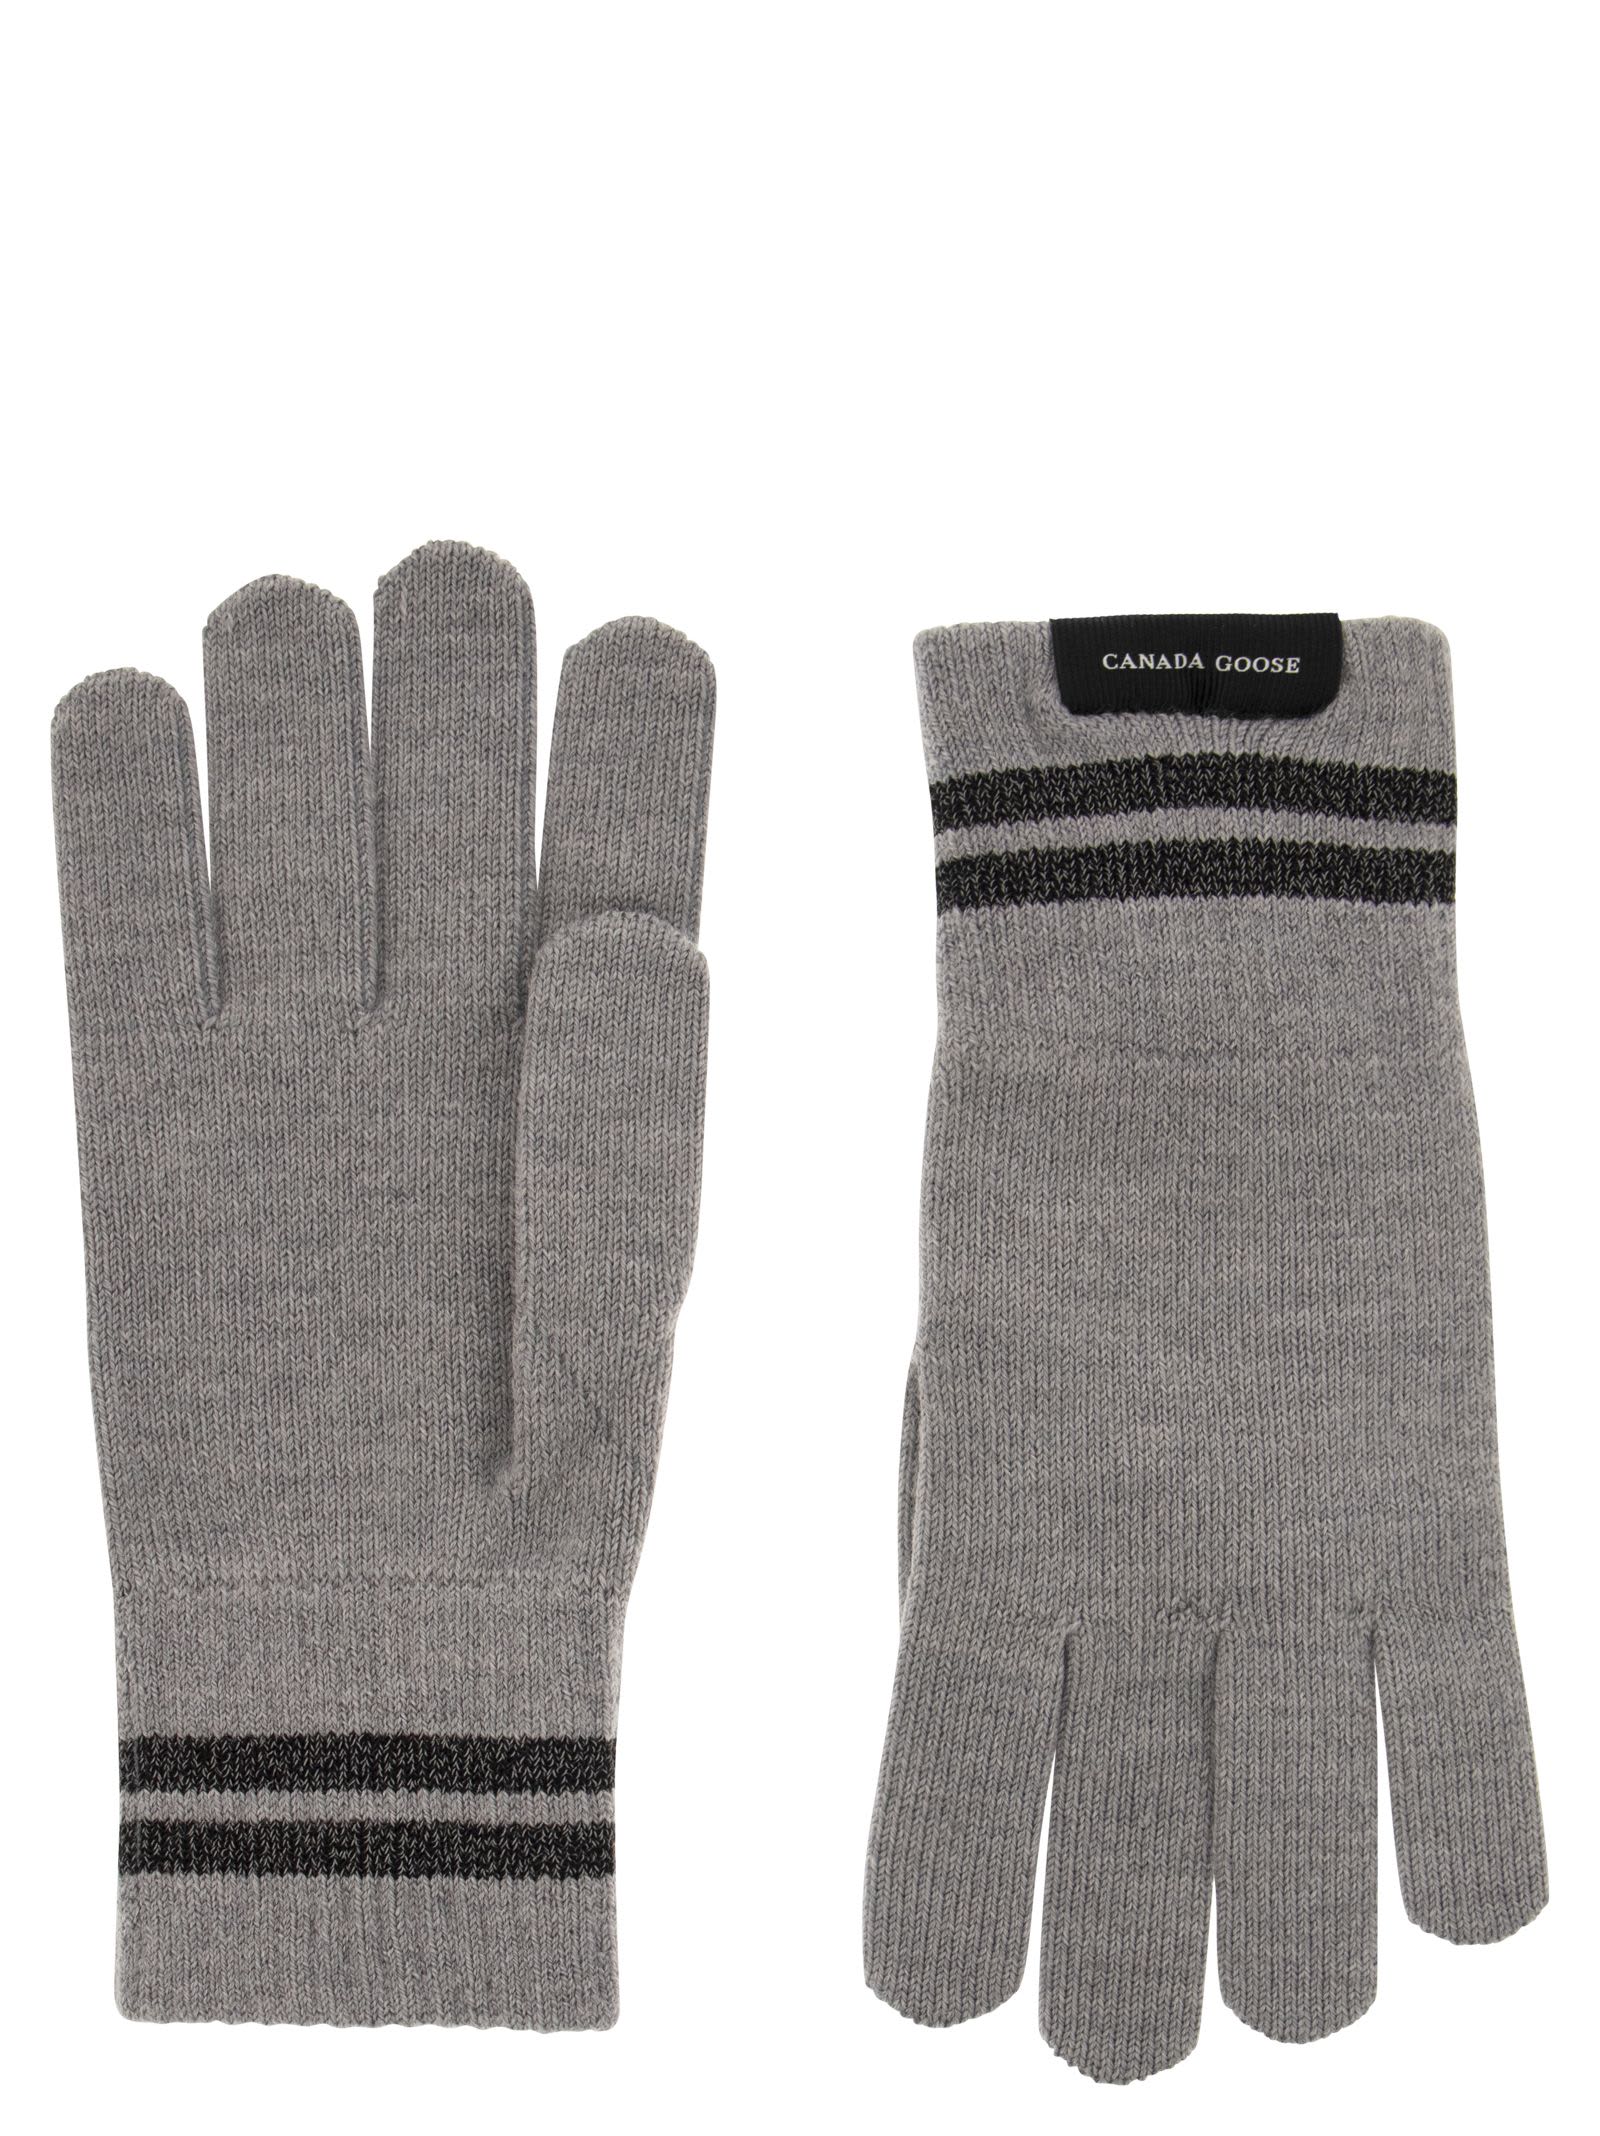 Wool Barrier Glove